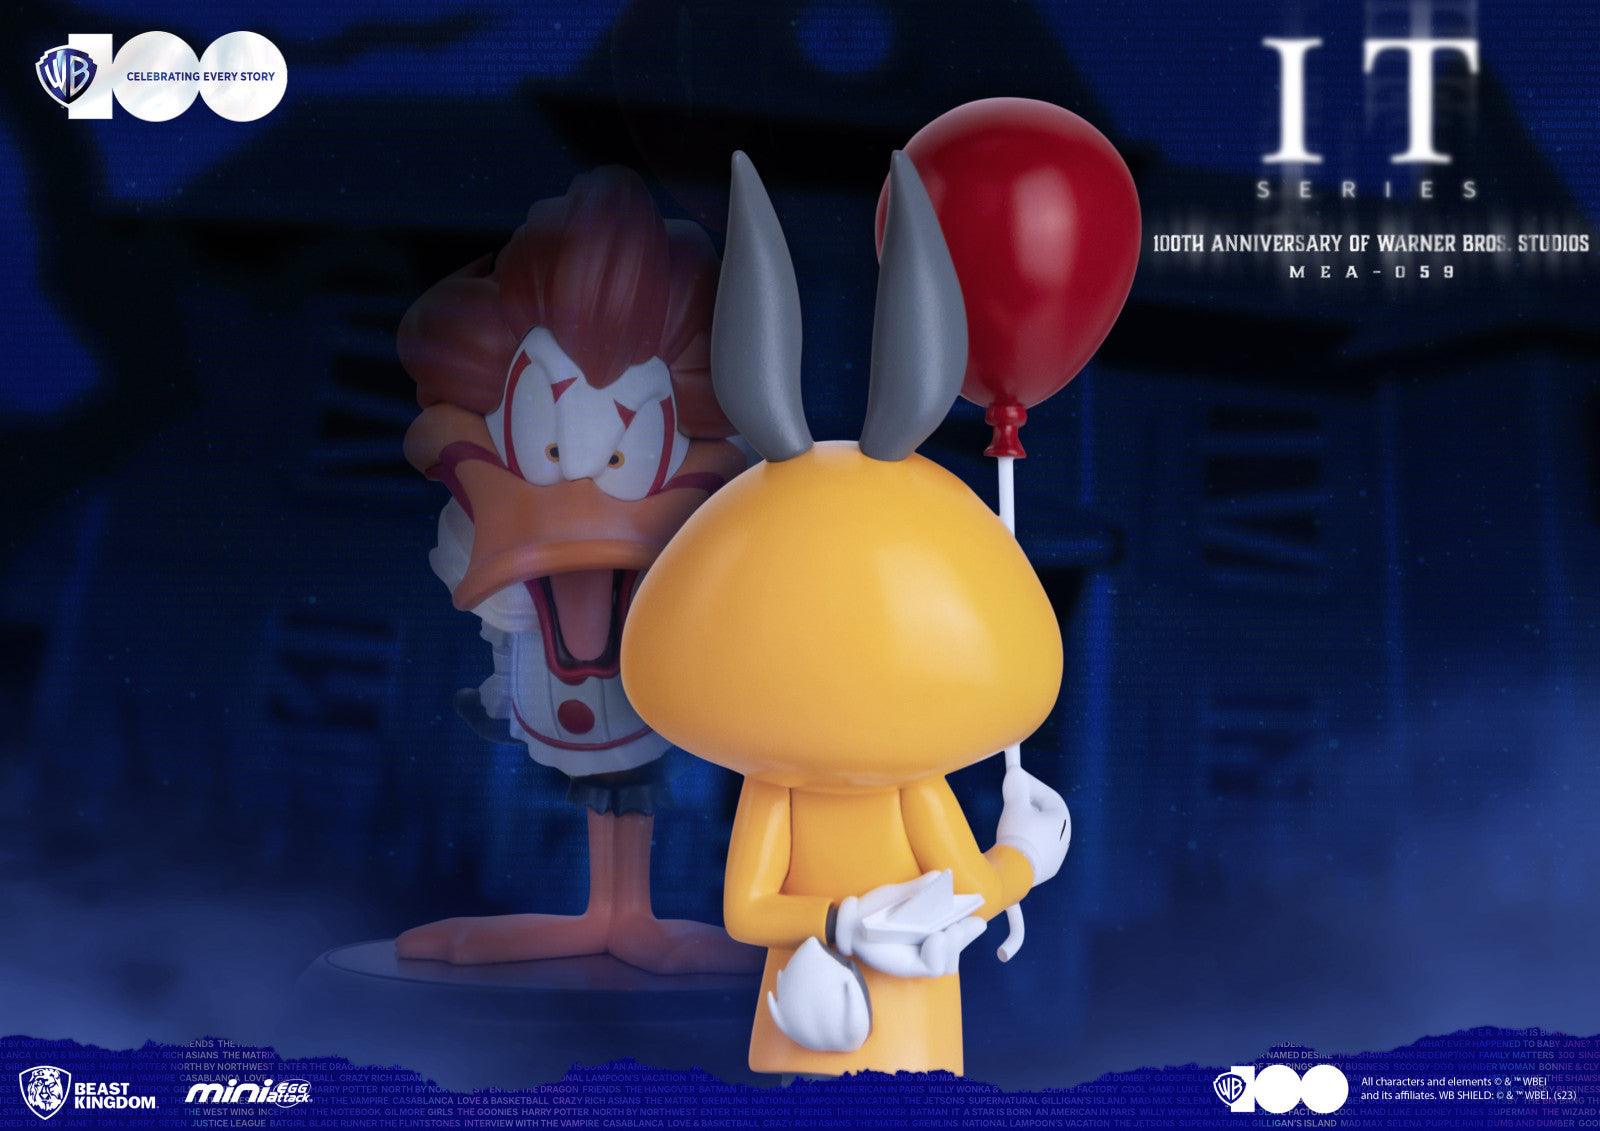 VR-112706 Beast Kingdom Mini Egg Attack 100th anniversary of Warner Bros Studios Series IT - Beast Kingdom - Titan Pop Culture